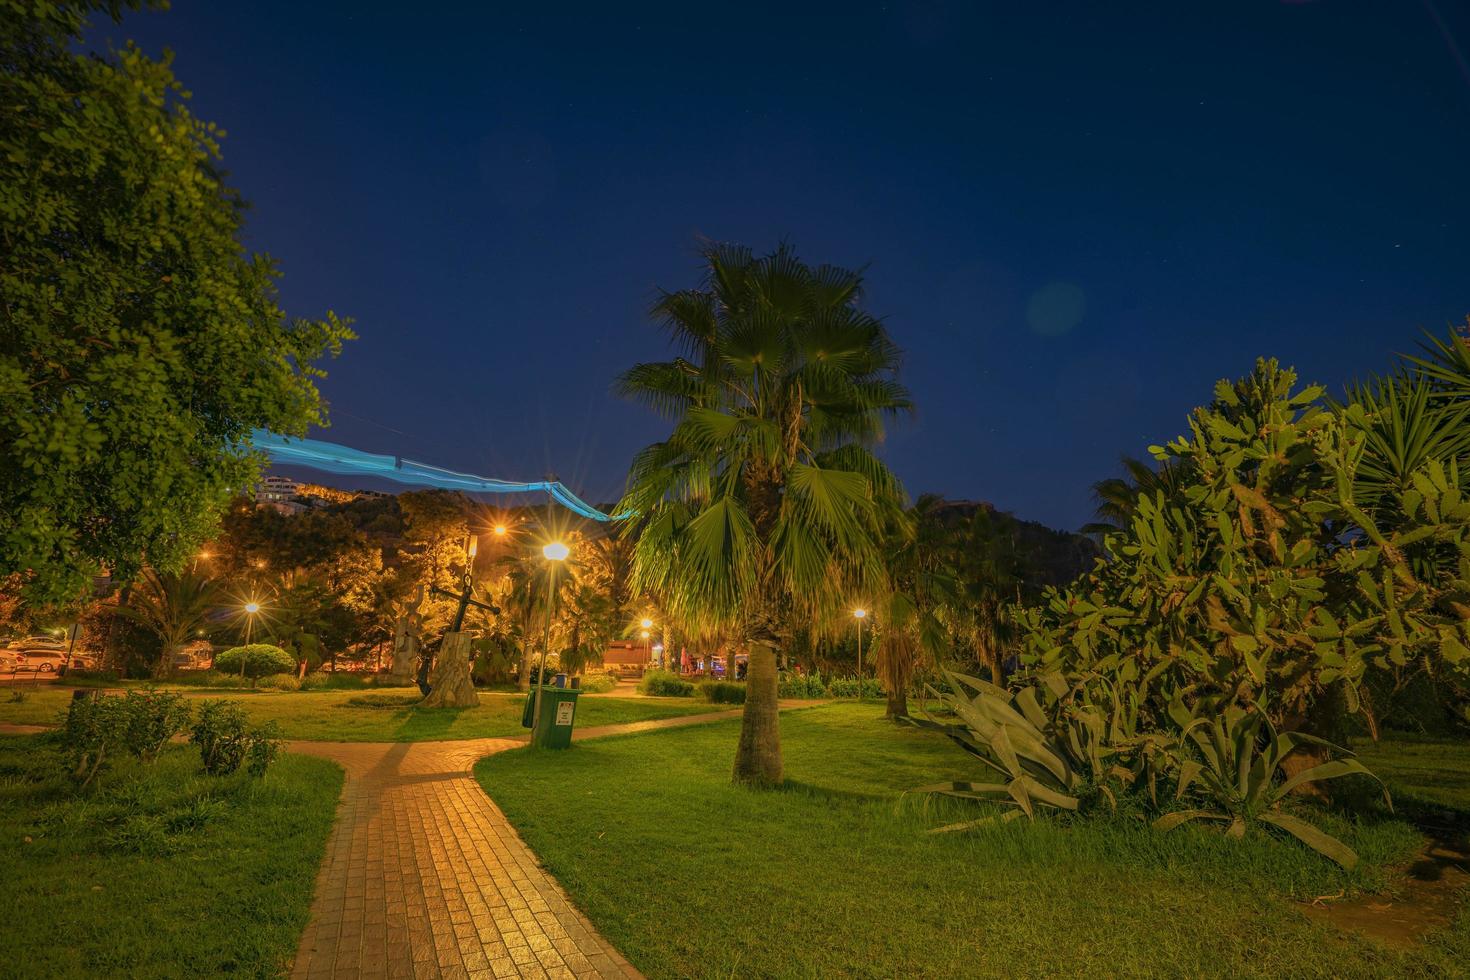 parc paisible de la nuit avec lampadaires, arbres, herbe verte et chemin. photo